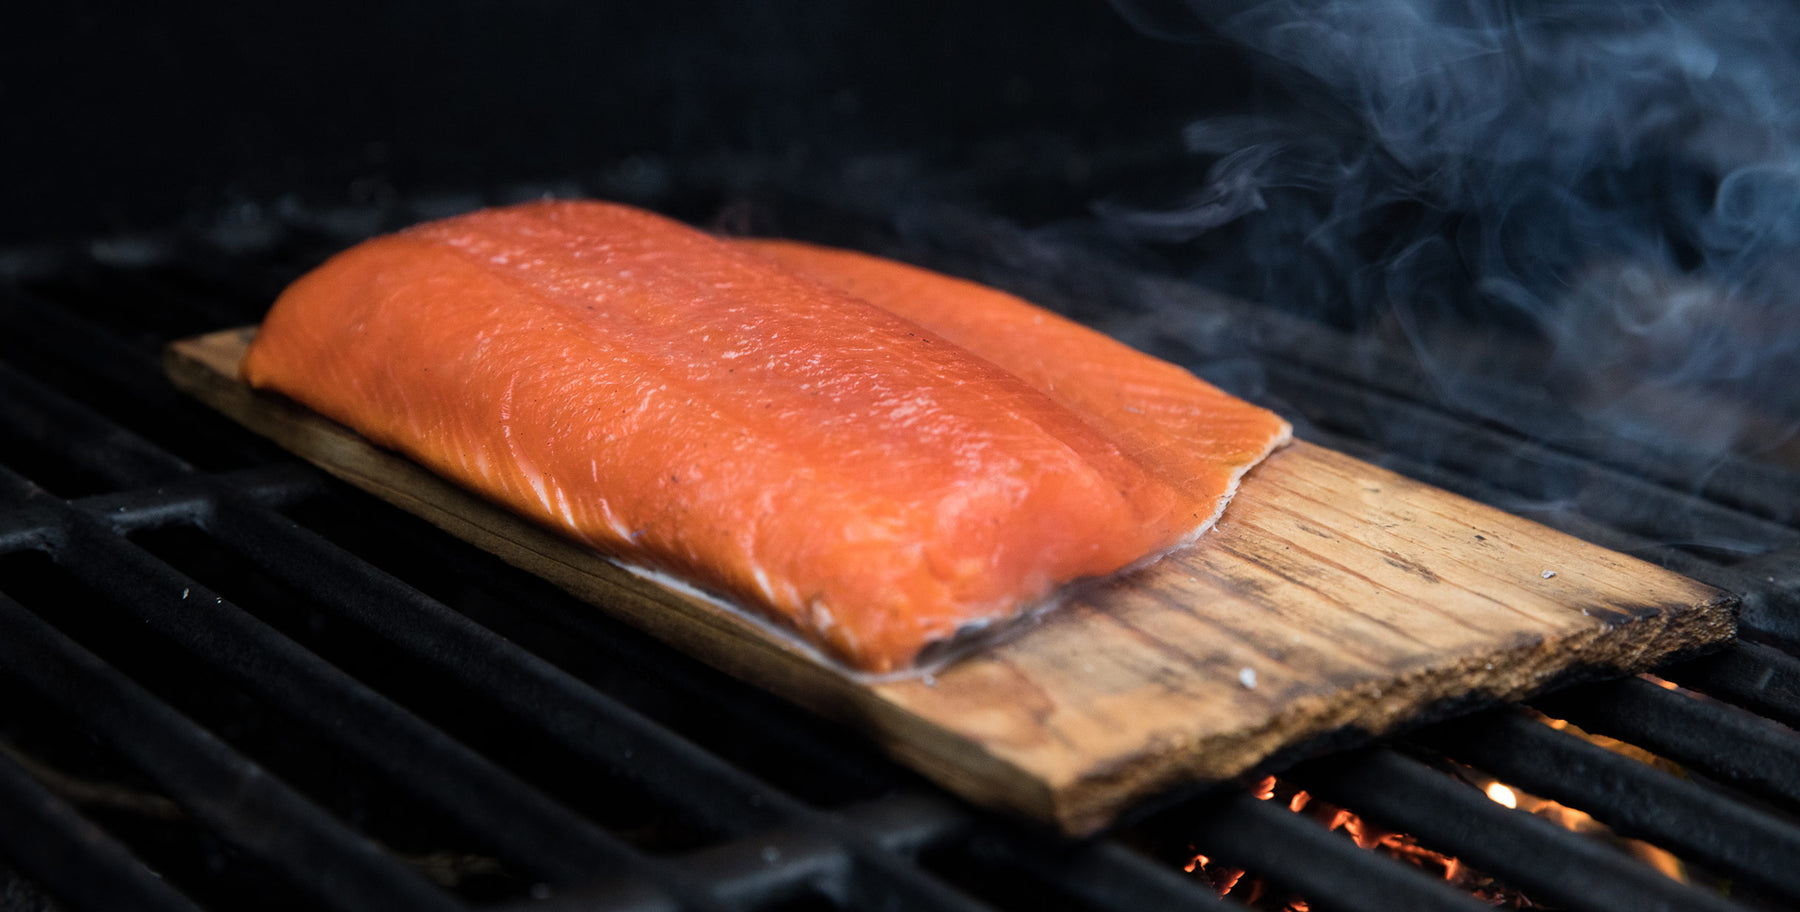 Marsh’s Grill-Smoked Salmon